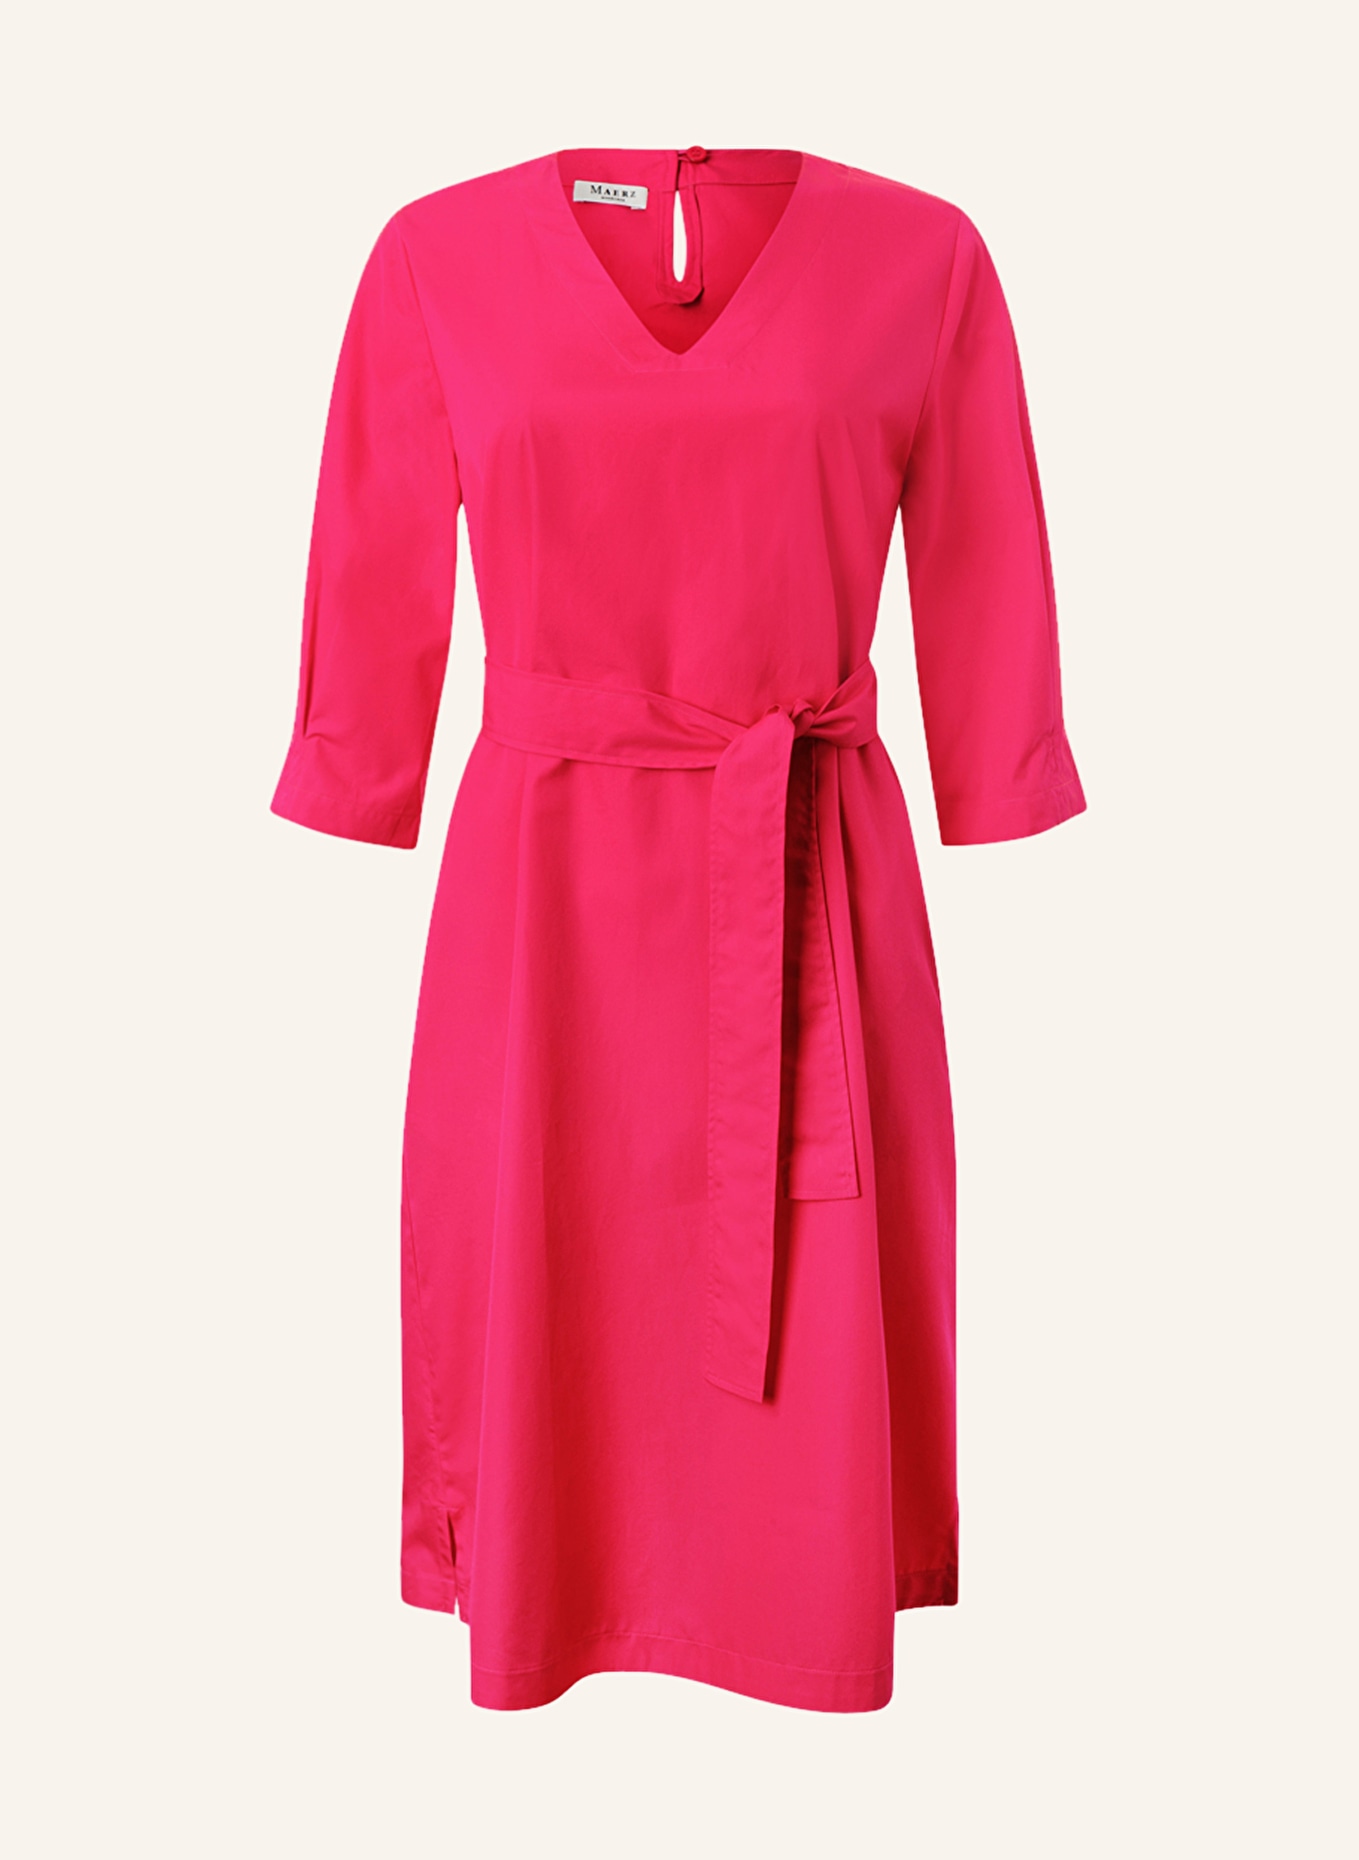 MAERZ MUENCHEN Kleid mit 3/4-Arm, Farbe: PINK (Bild 1)